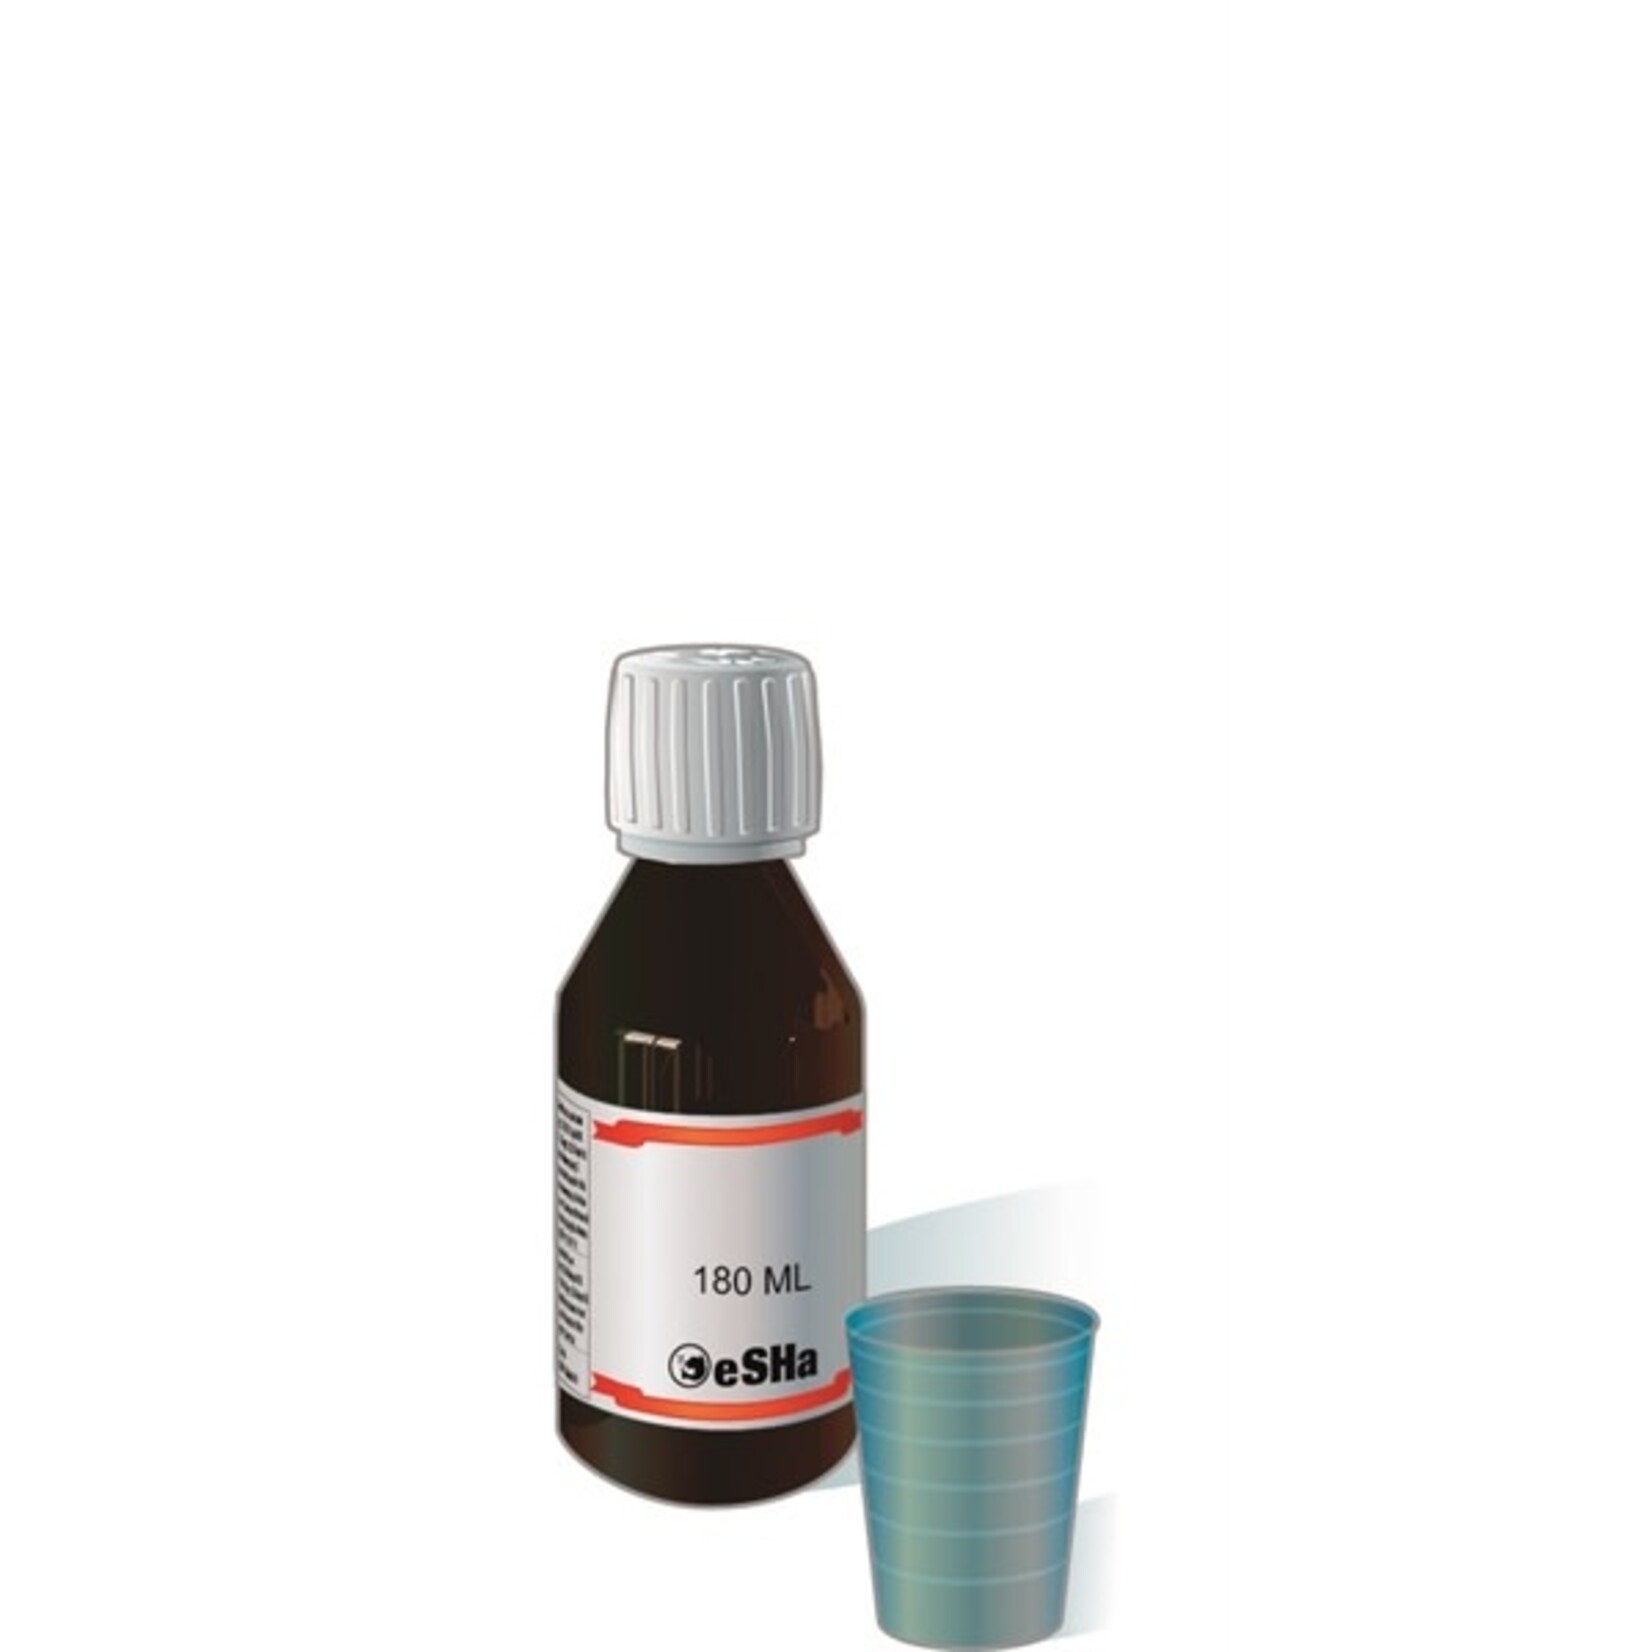 eSHa Copy of Hexamita 20 ml